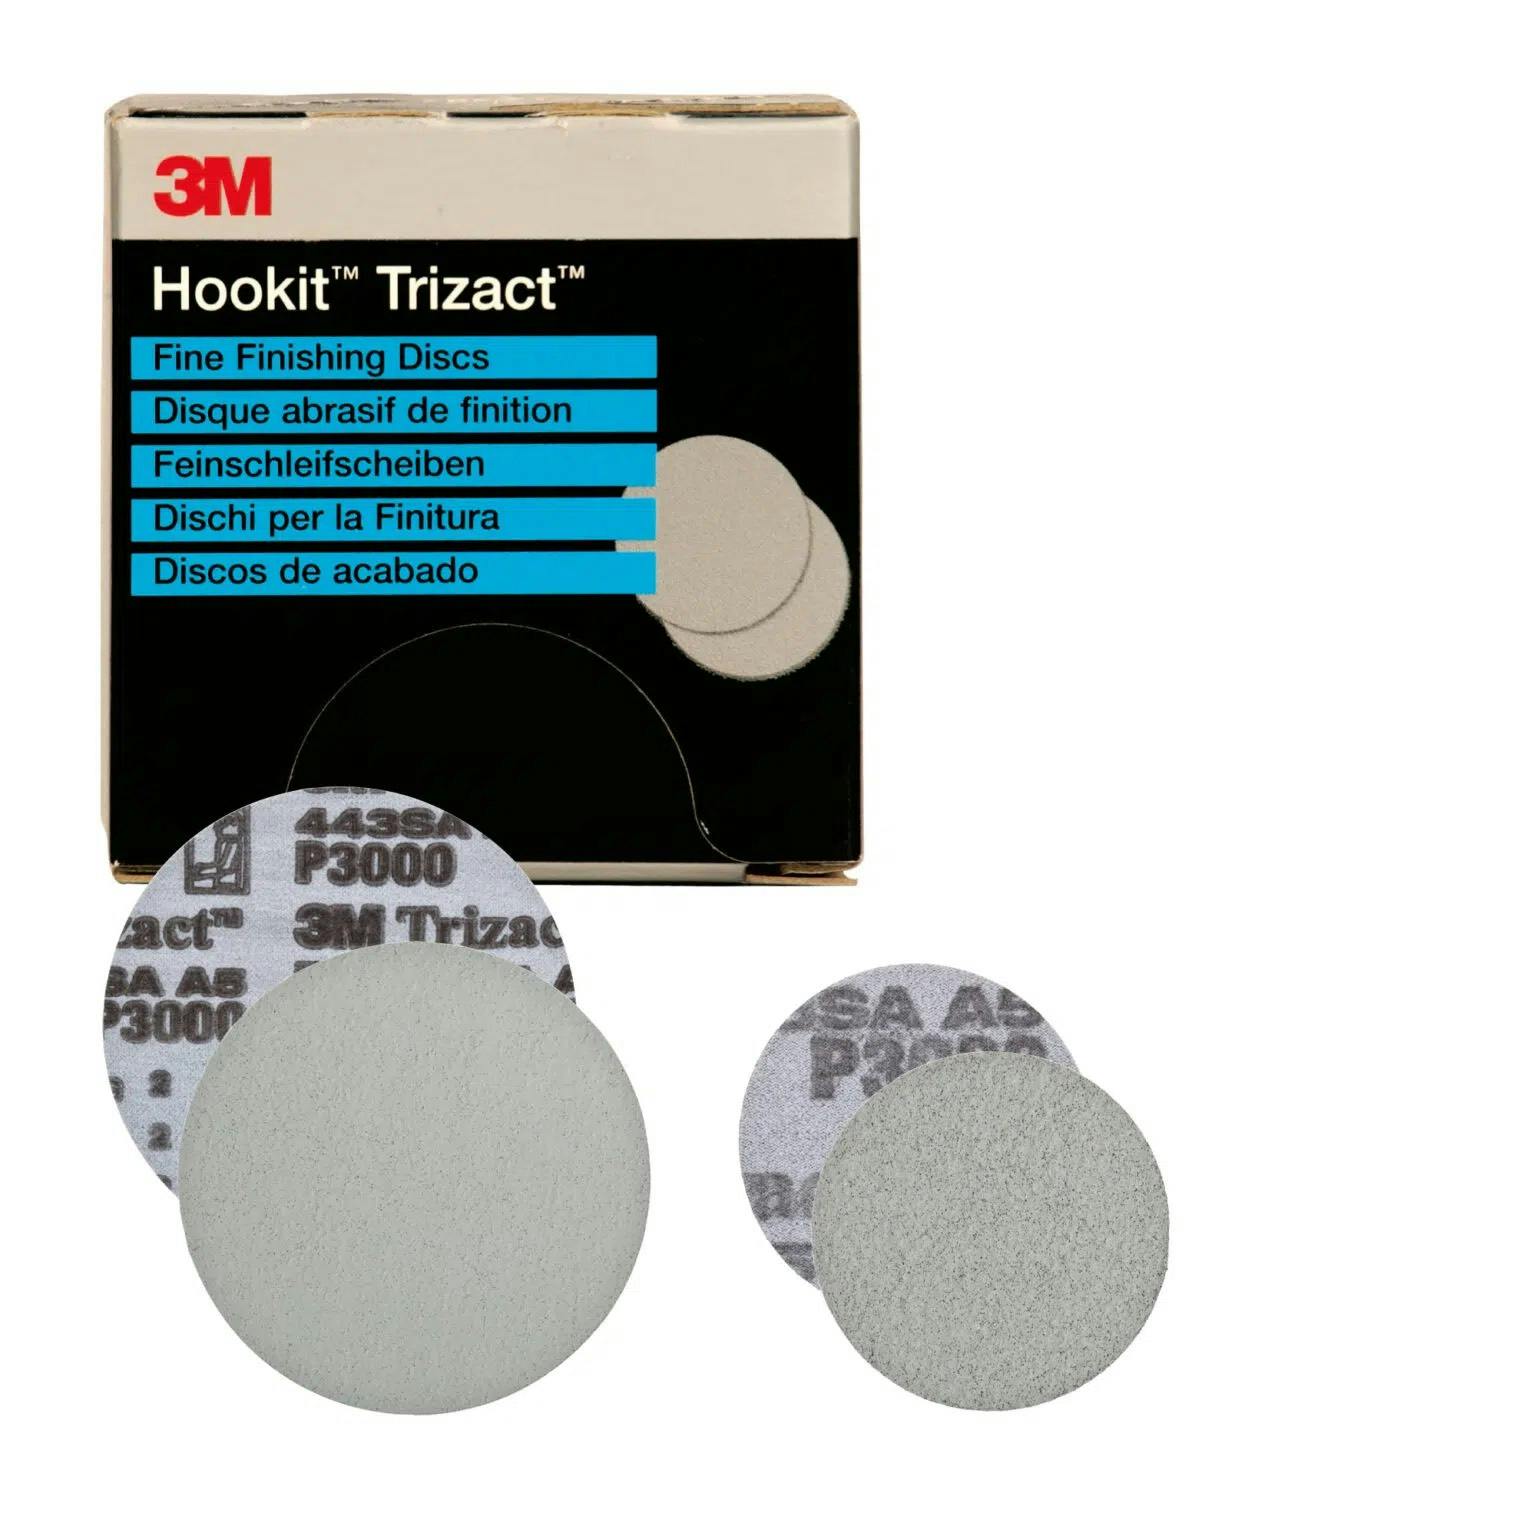 3M Hookit Trizact 150mm pr stk